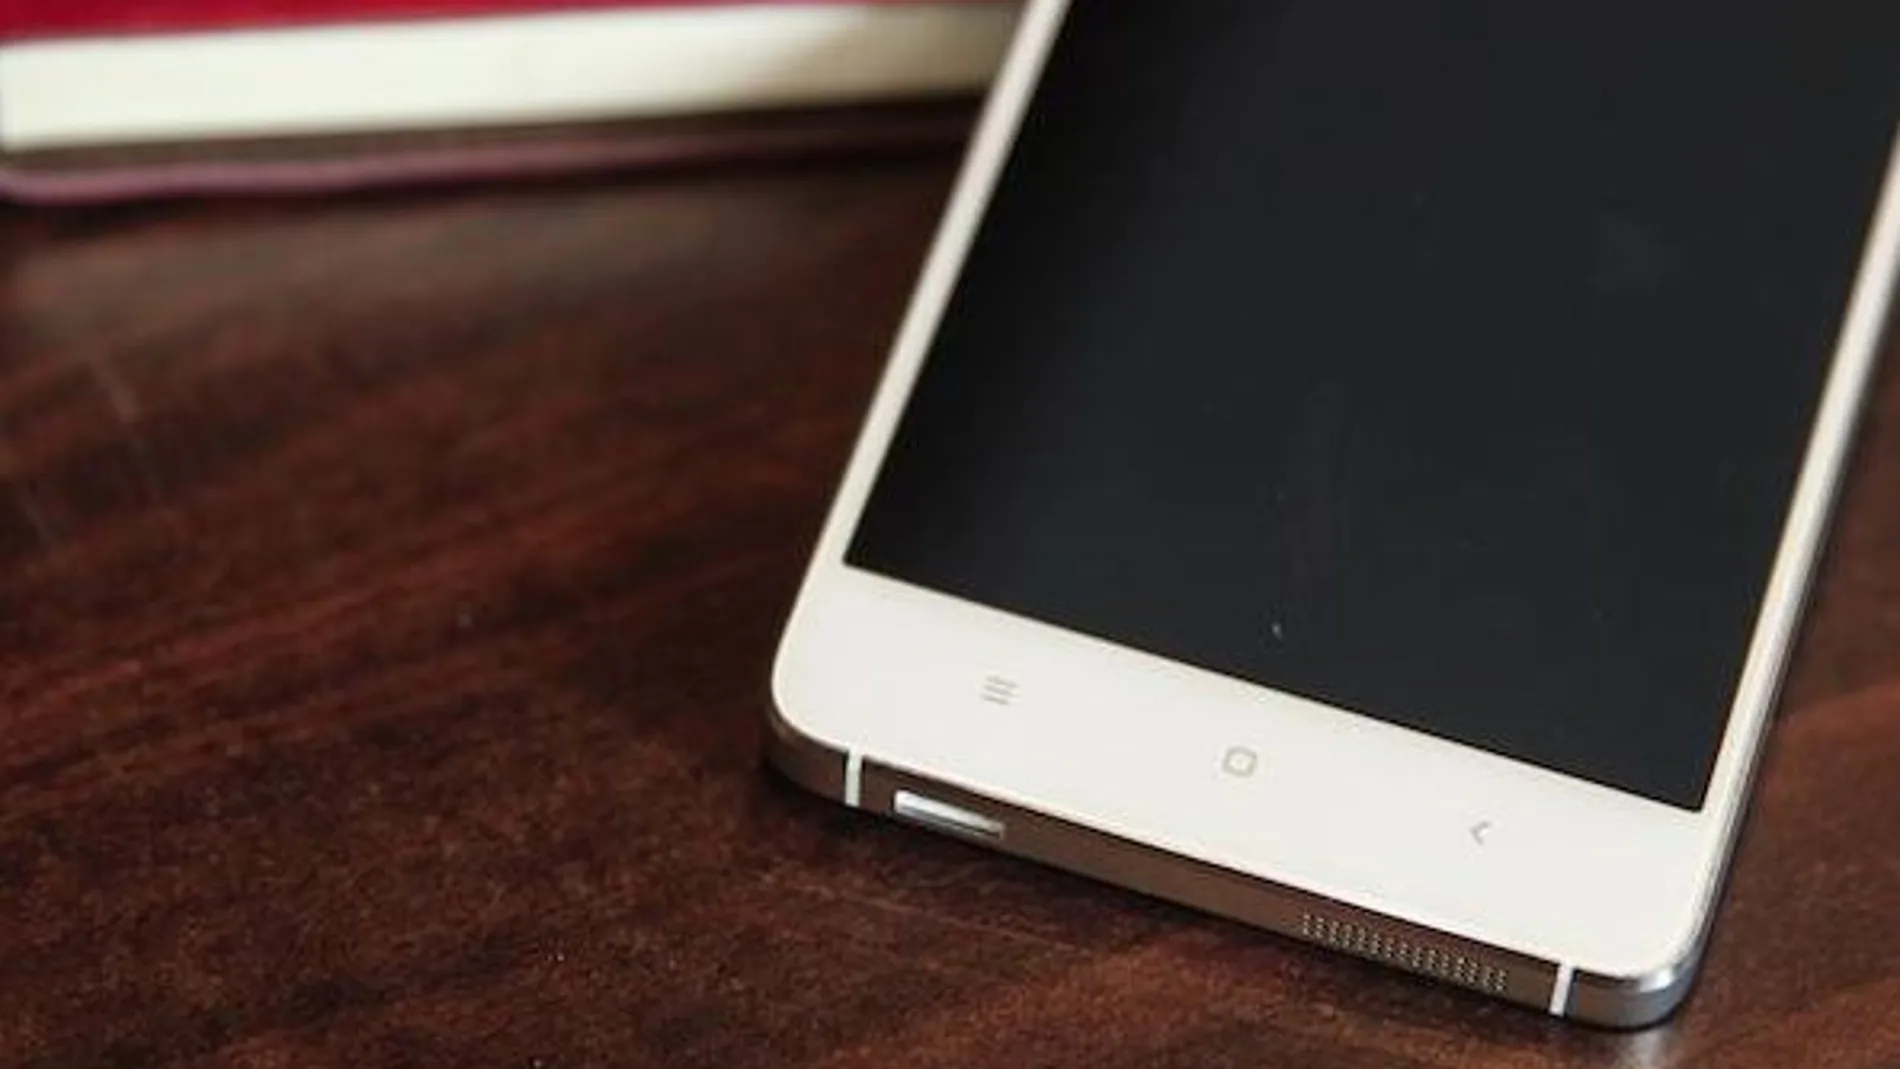 El nuevo smartphone, Xiaomi Mi4, se agota en 37 segundos